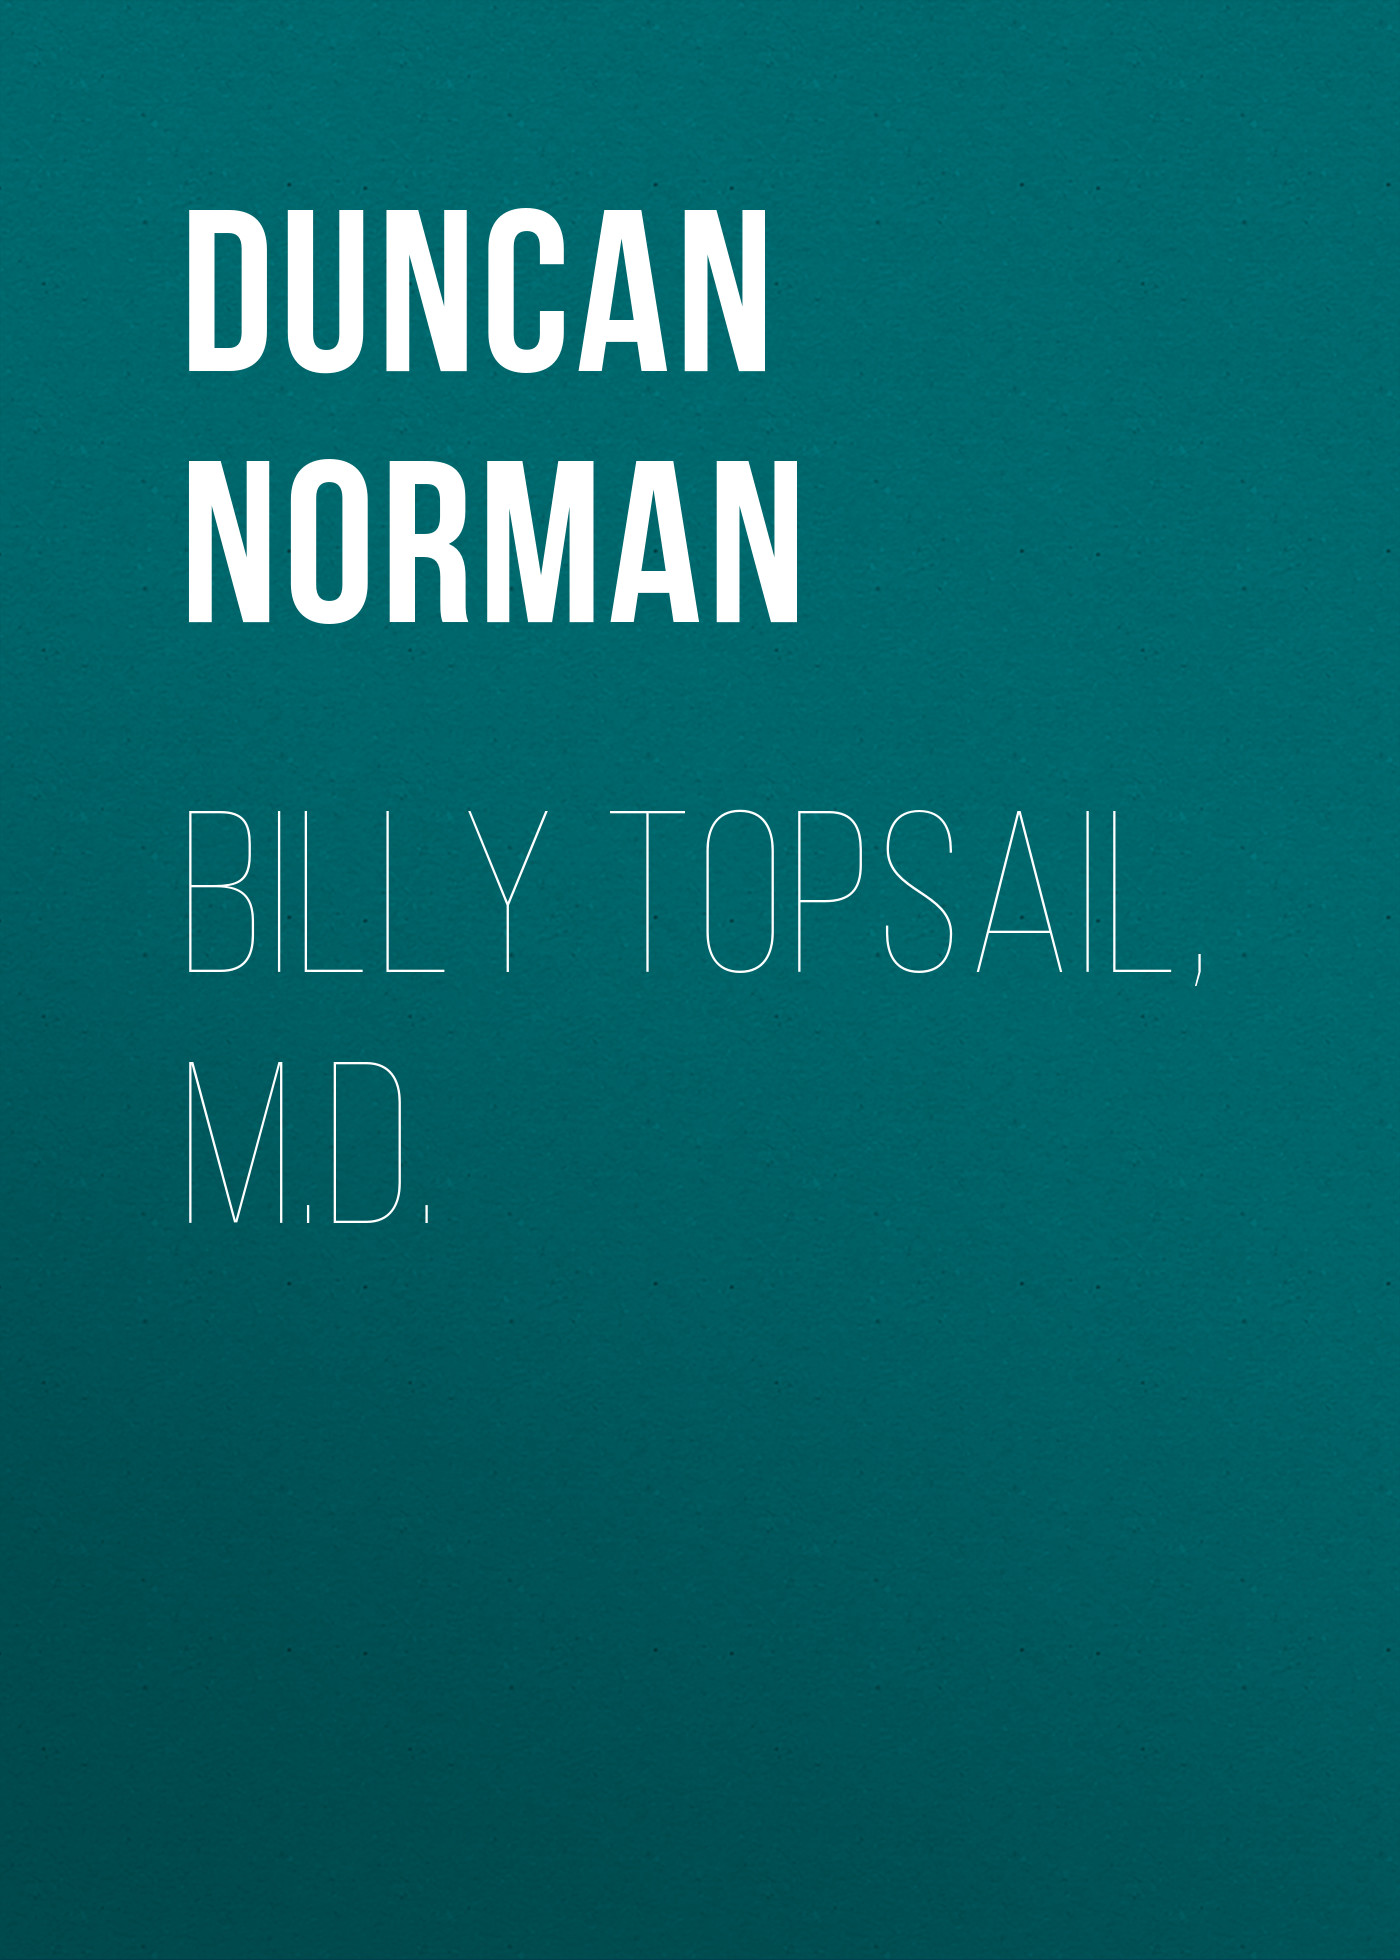 Книга Billy Topsail, M.D. из серии , созданная Norman Duncan, может относится к жанру Зарубежная старинная литература, Зарубежная классика. Стоимость электронной книги Billy Topsail, M.D. с идентификатором 24621885 составляет 0 руб.